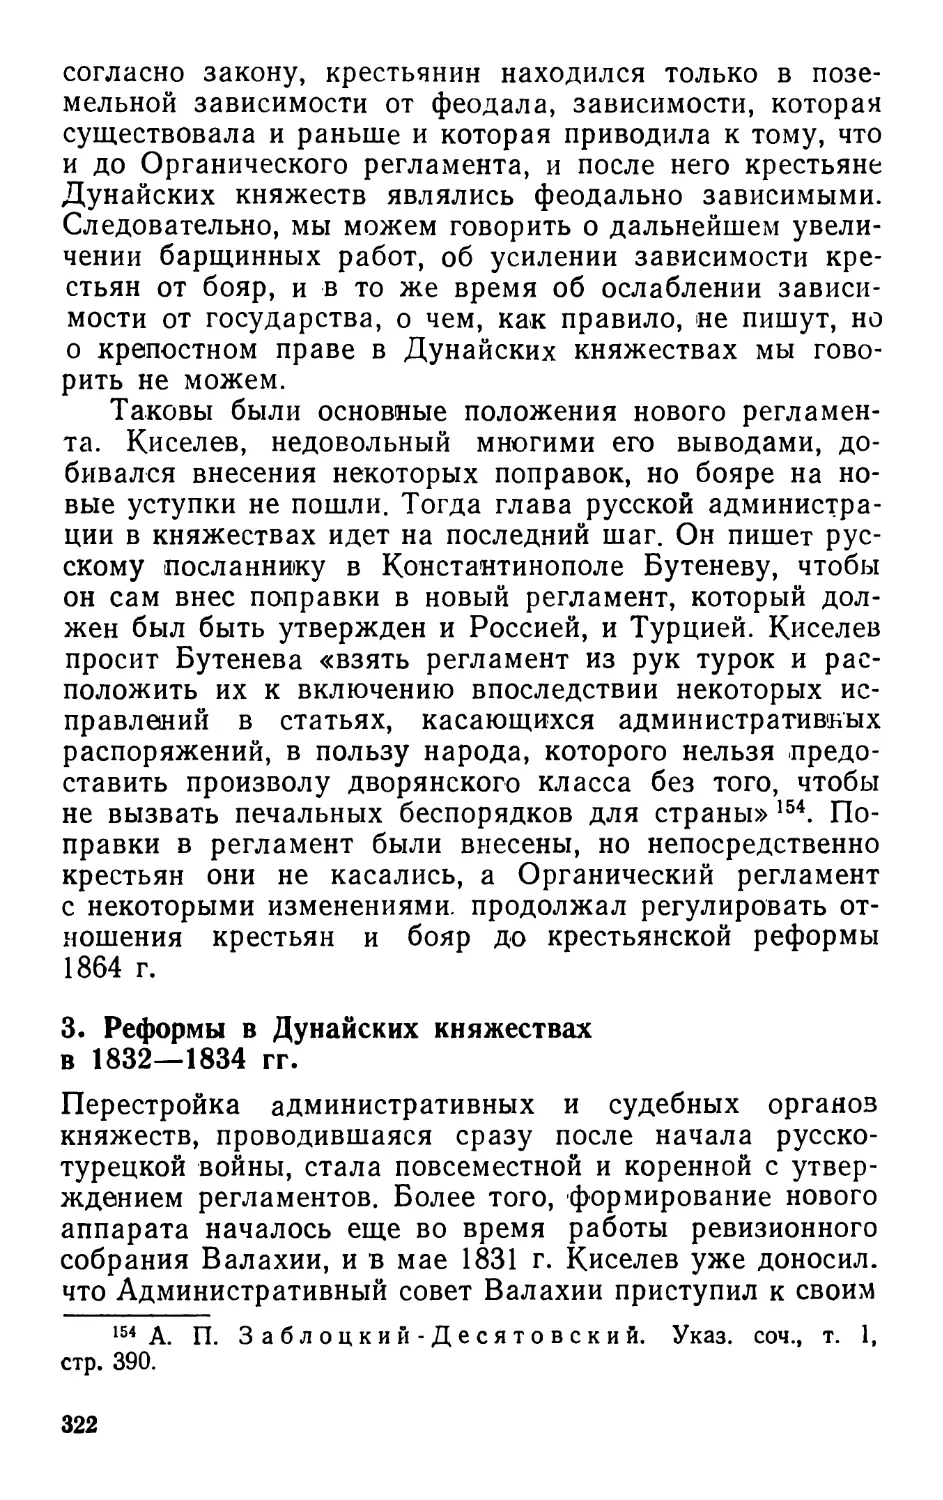 3. Реформы в Дунайских княжествах в 1832—1834 гг.